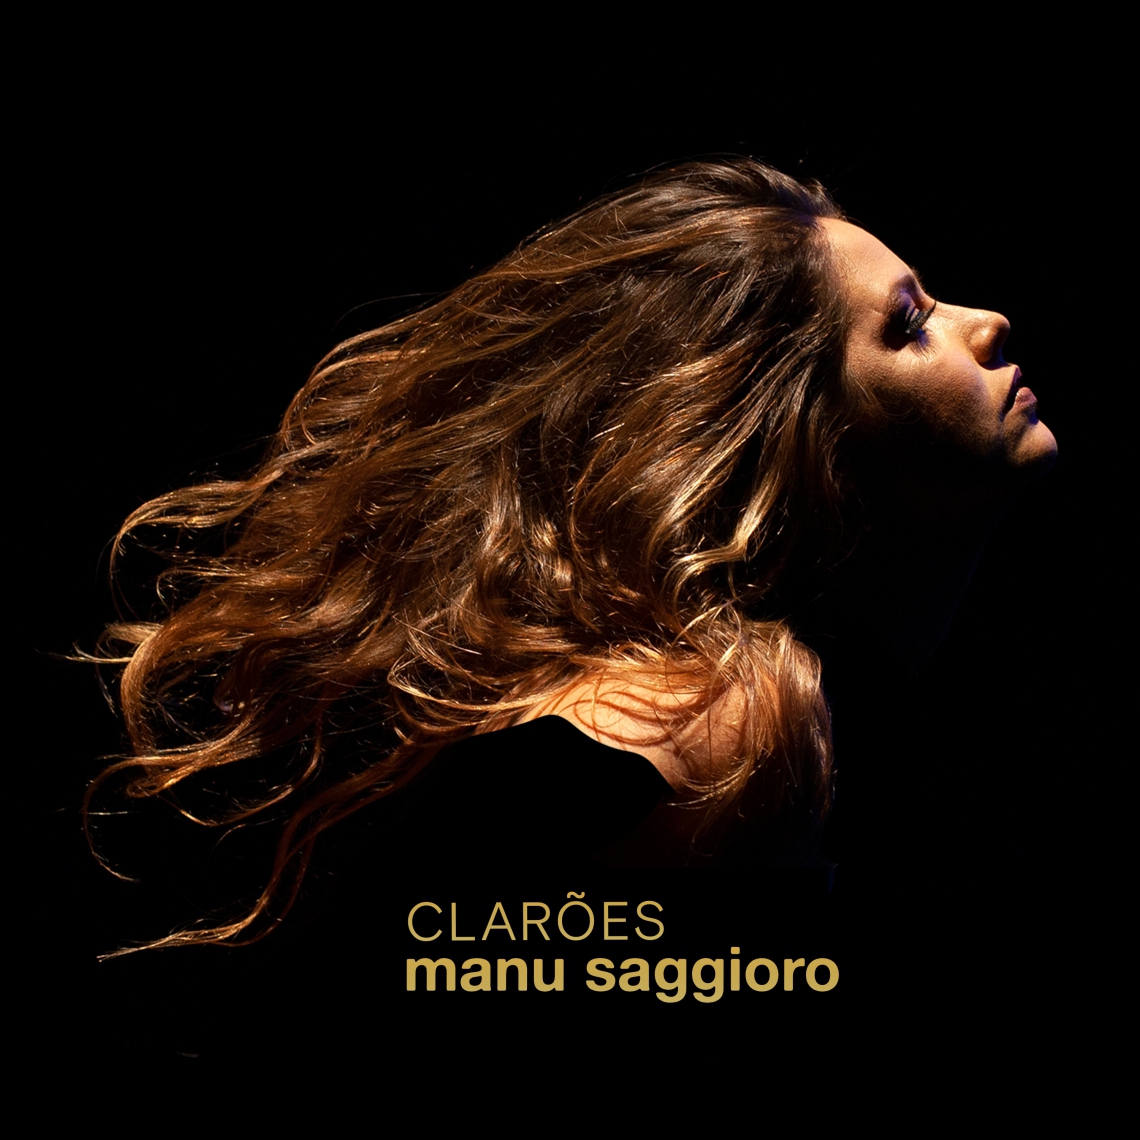 Capa do disco Clarões, de Manu Saggioro (Foto: Divulgação)